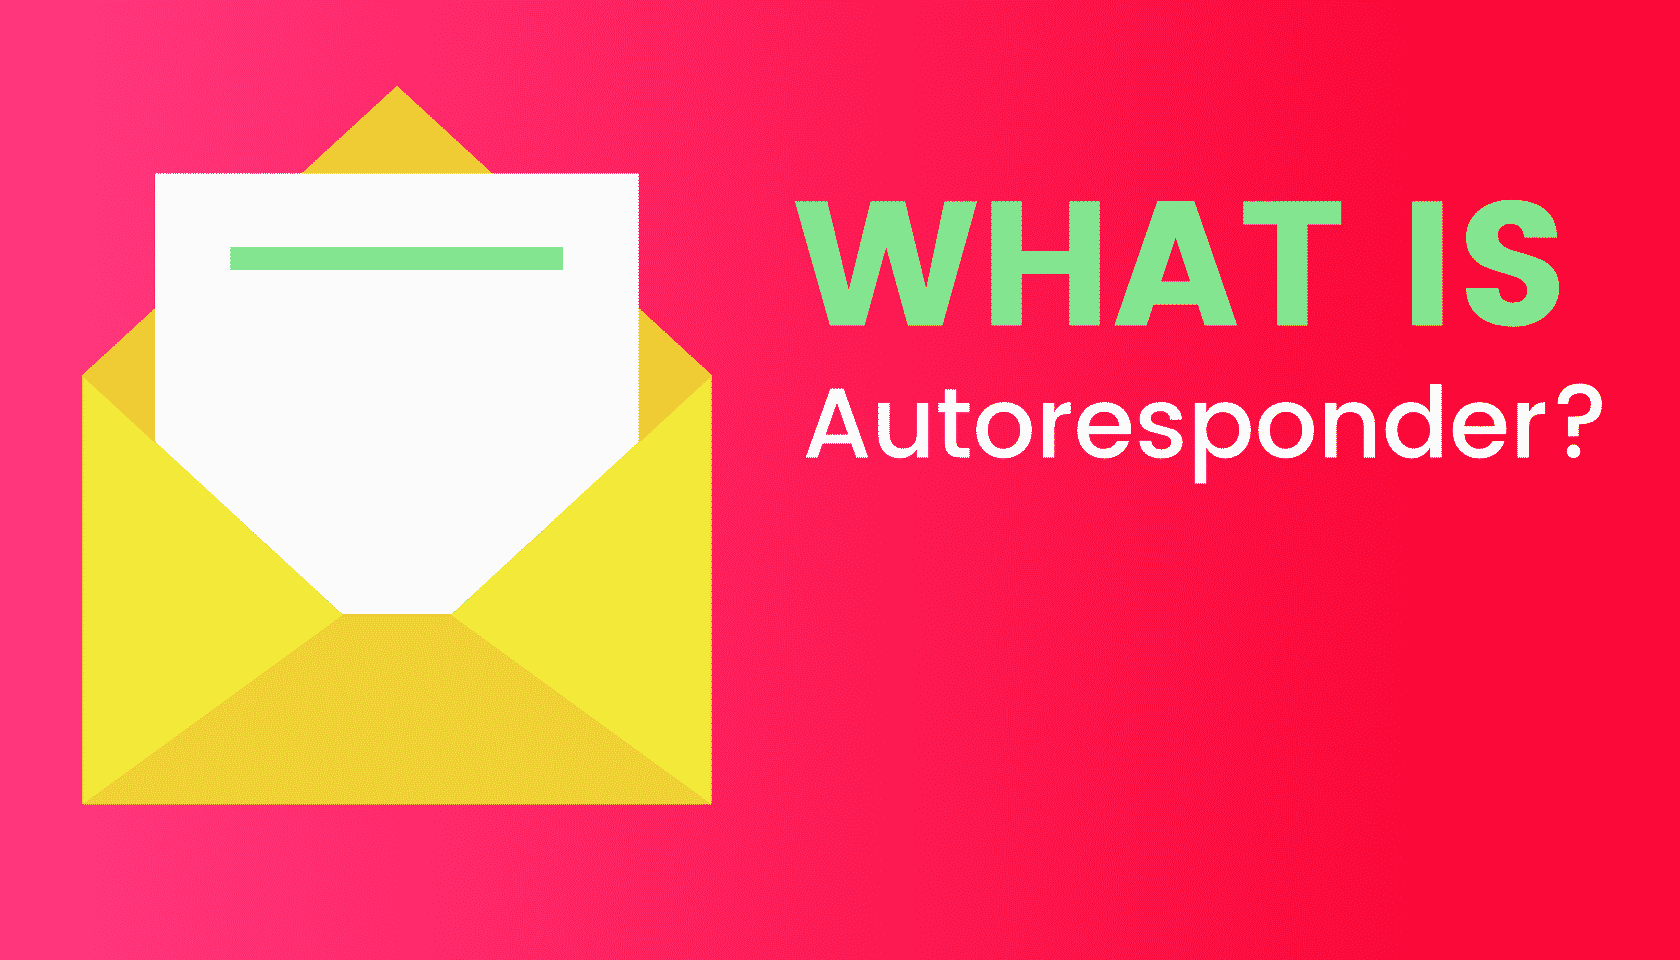 What is: Autoresponder?